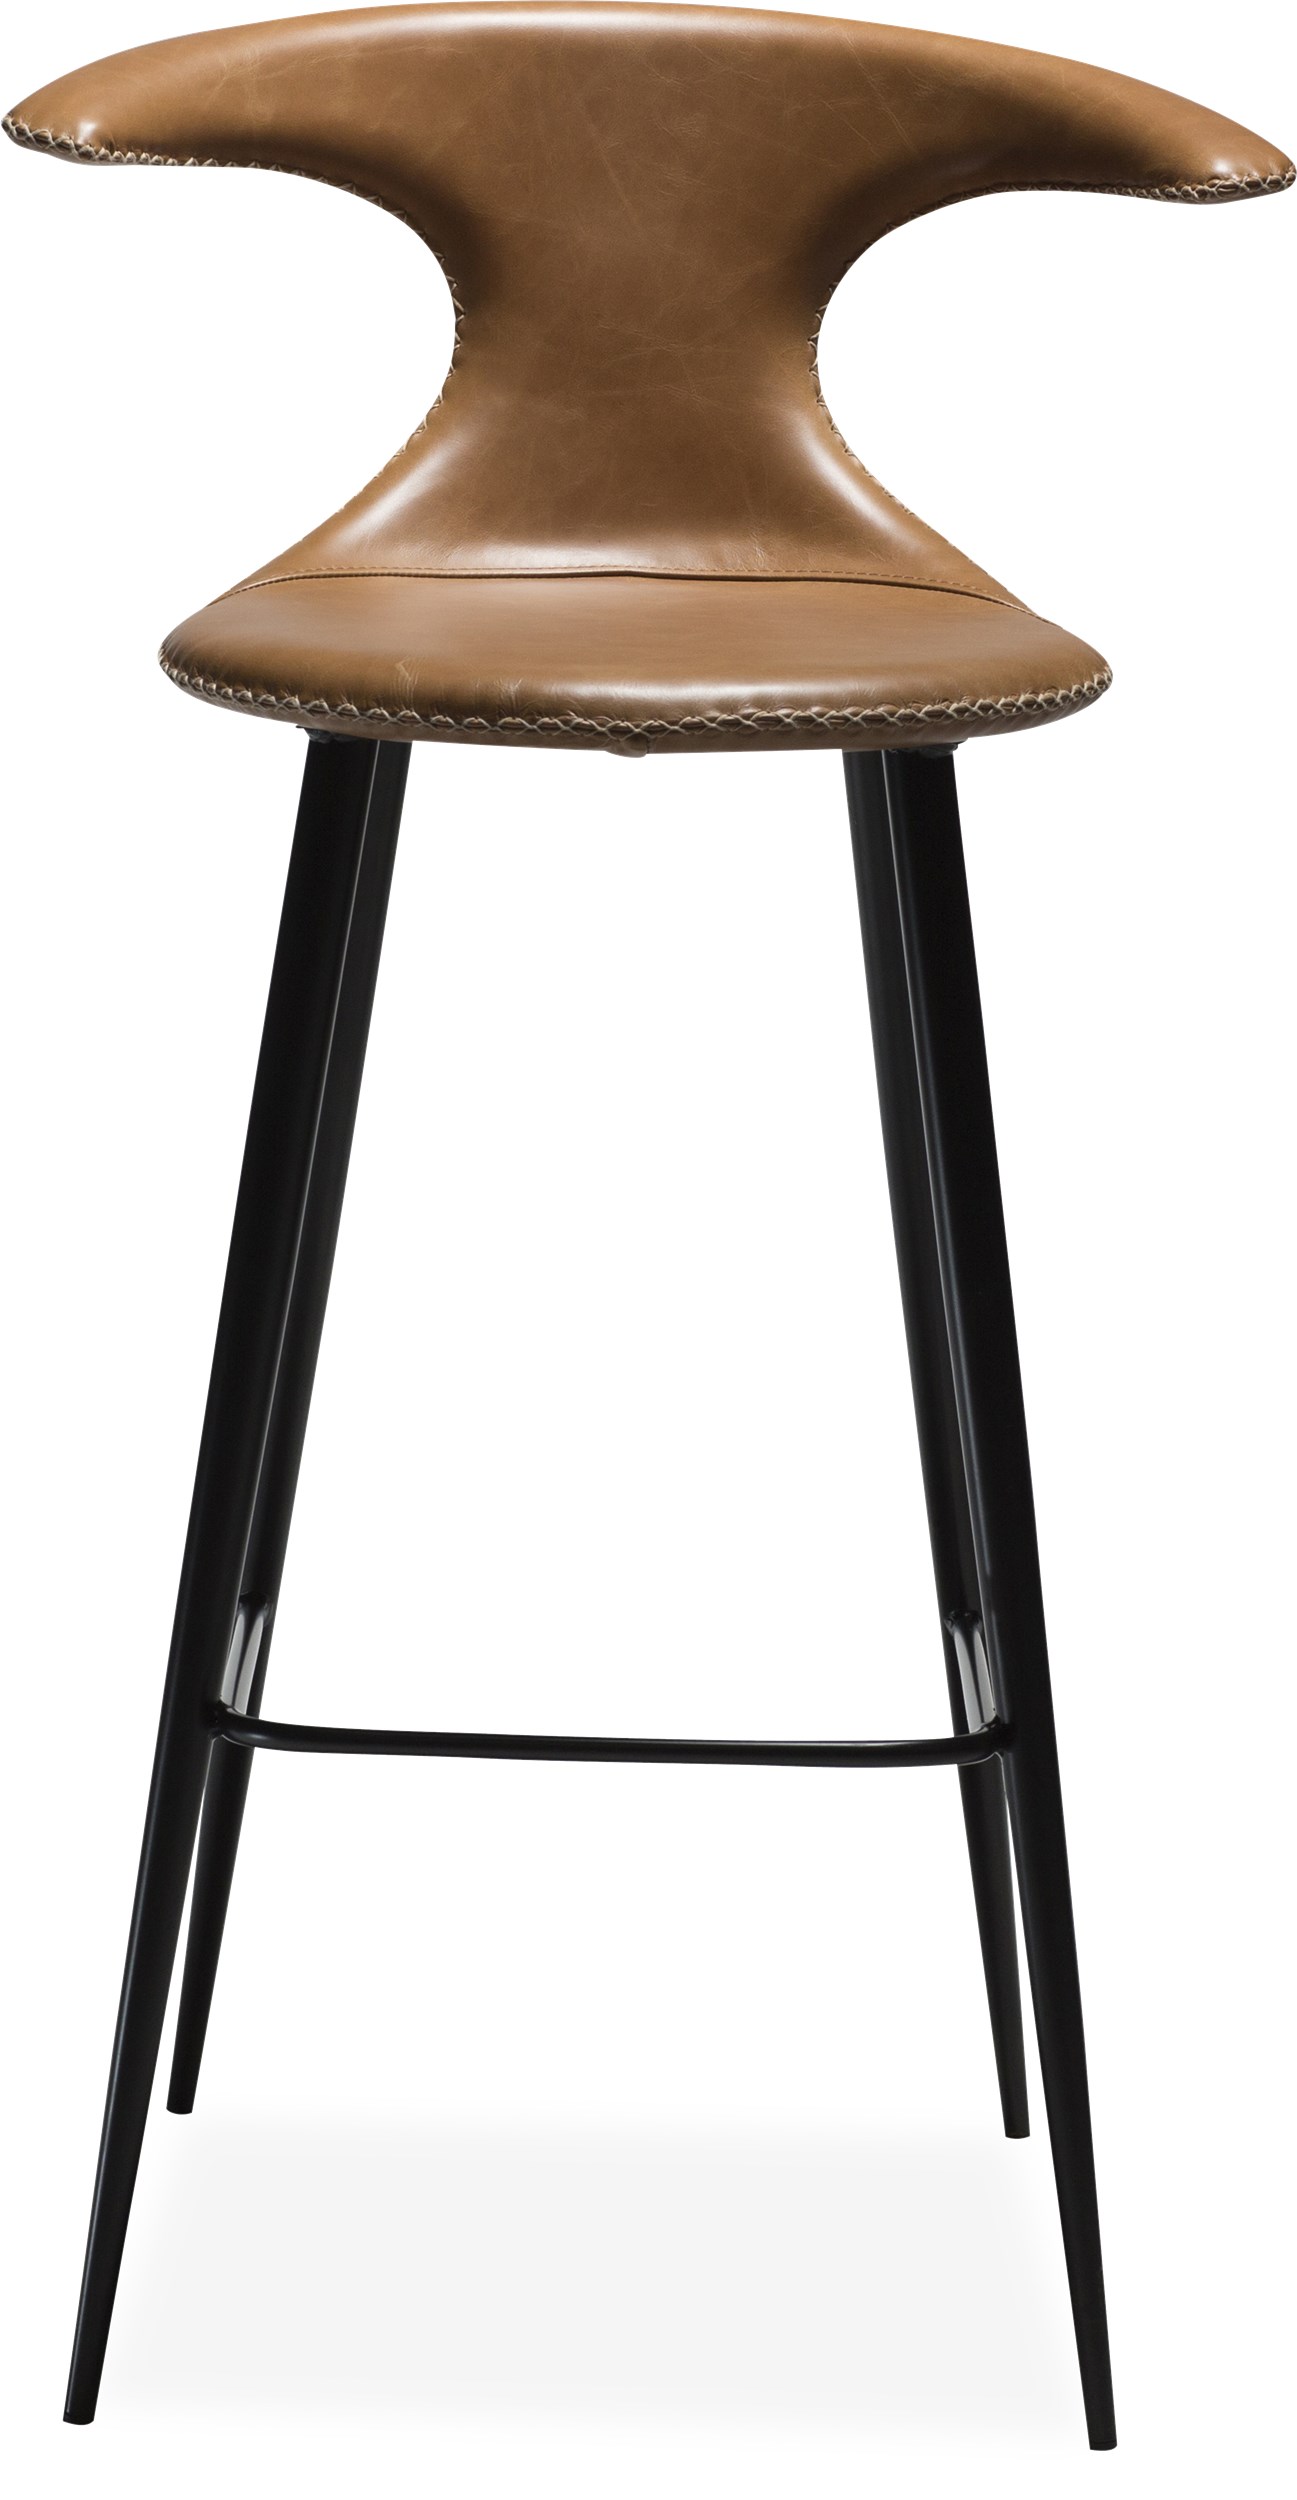 Flaire Barstol - Sits i ljusbrunt läder, med kontrastfärgade sömmar och runda ben i svartlackerad metall